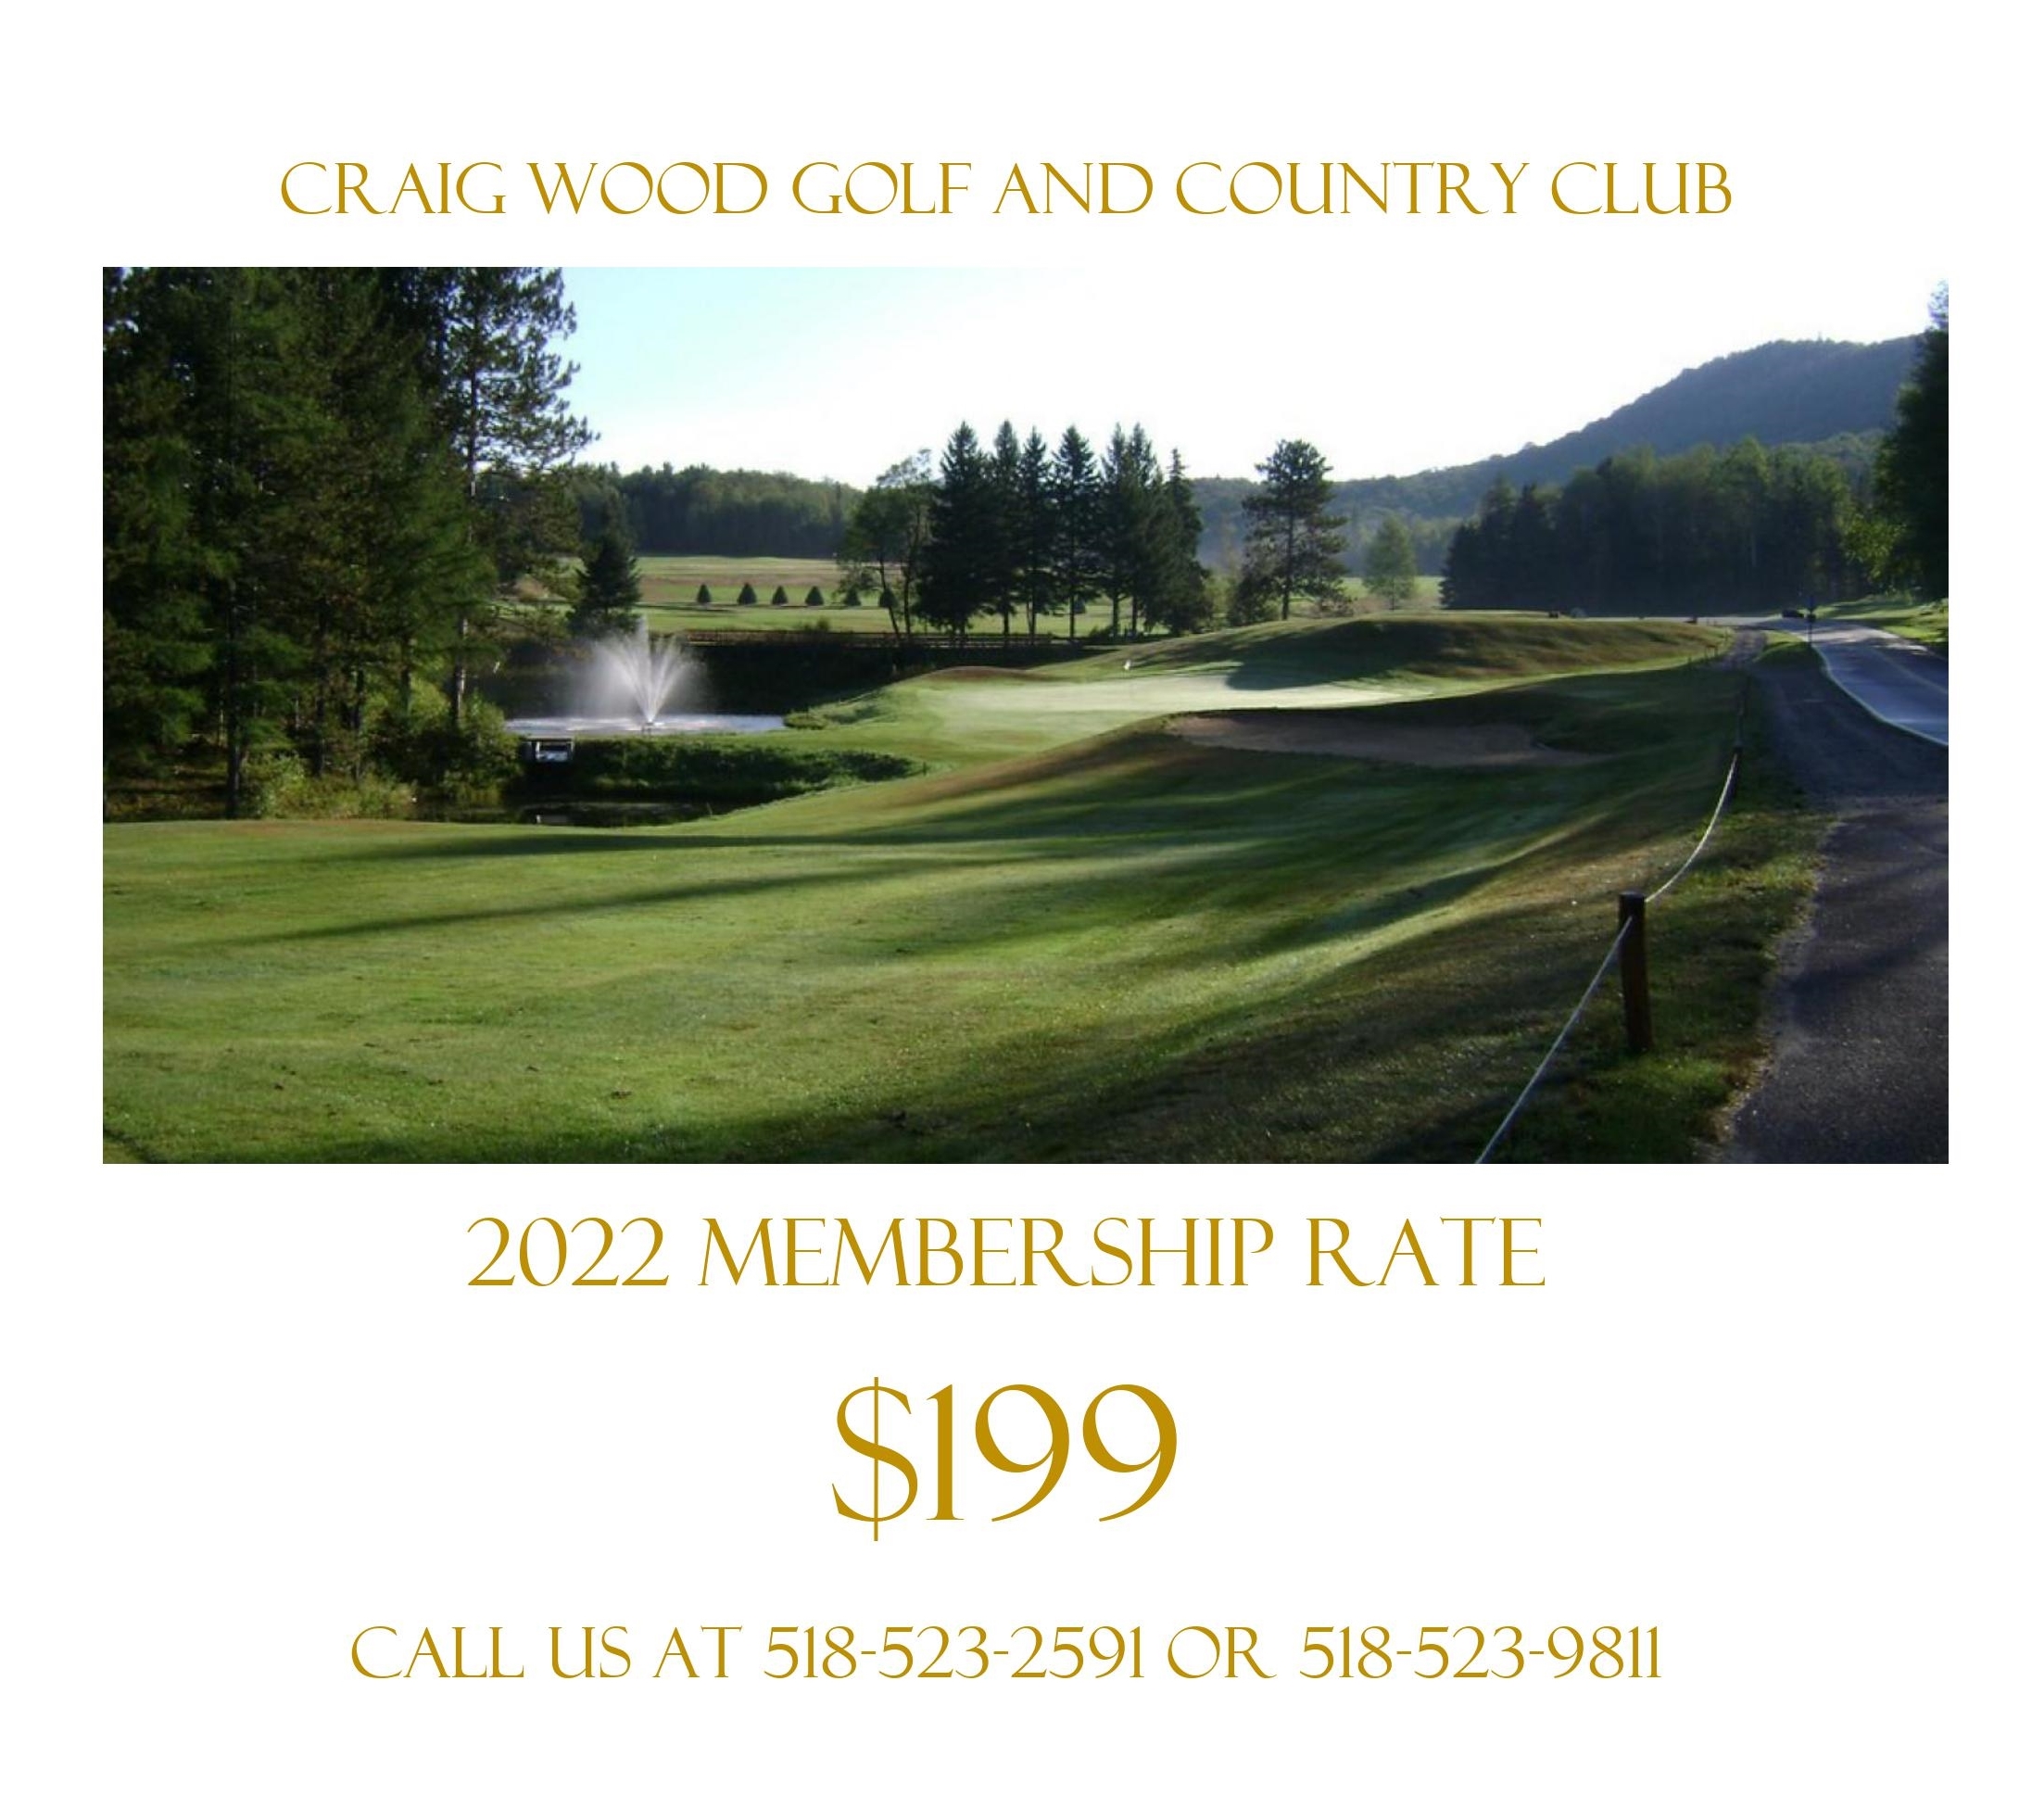 $199 Membership Rate